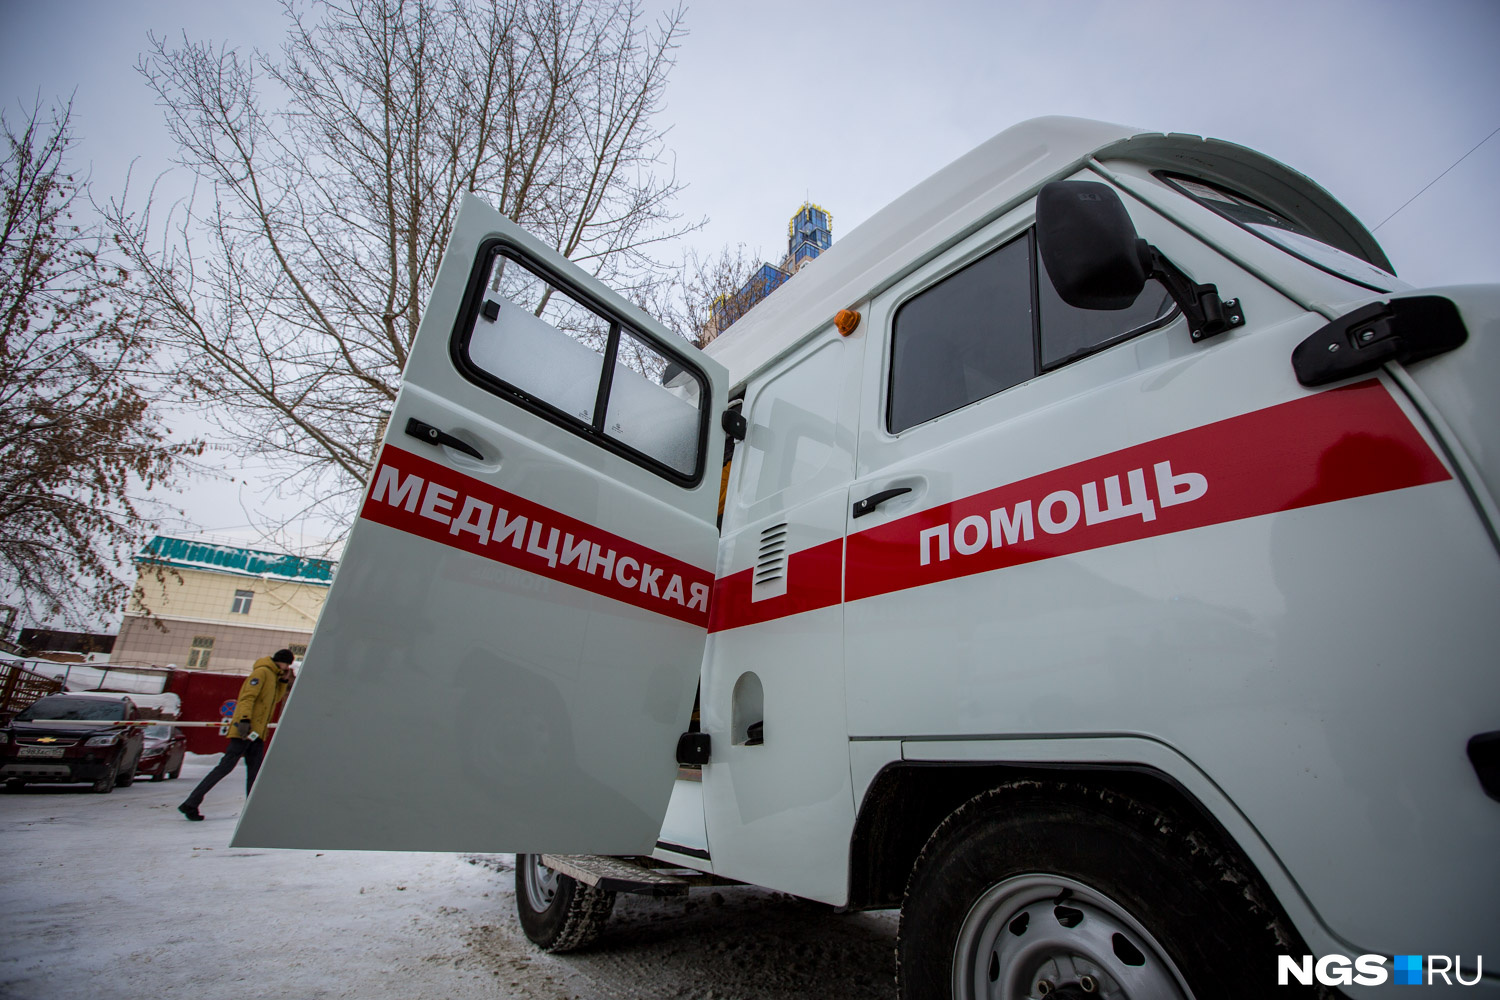 Скорая помощь вновь застряла в сугробах в городе Березовский. Это третий случай за месяц